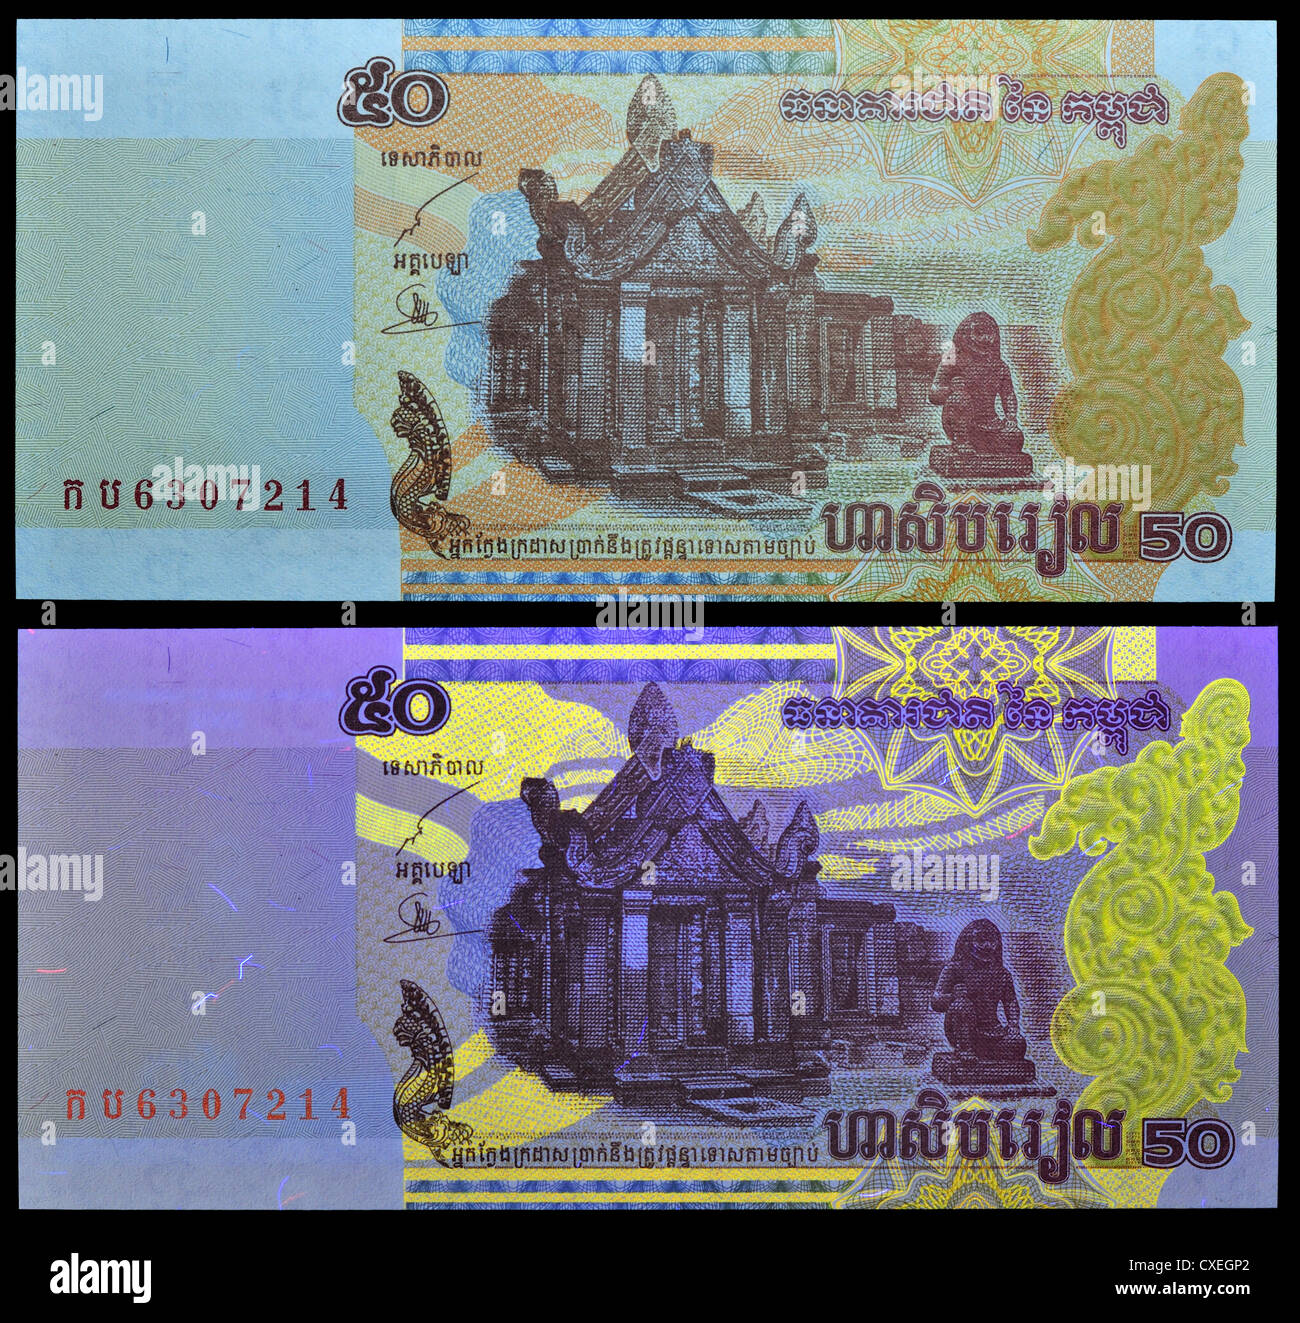 Vu des billets avec la lumière naturelle et la lumière UV, montrant les fonctions de sécurité. 50 note de Riel, Cambodge, 2002. Banque D'Images